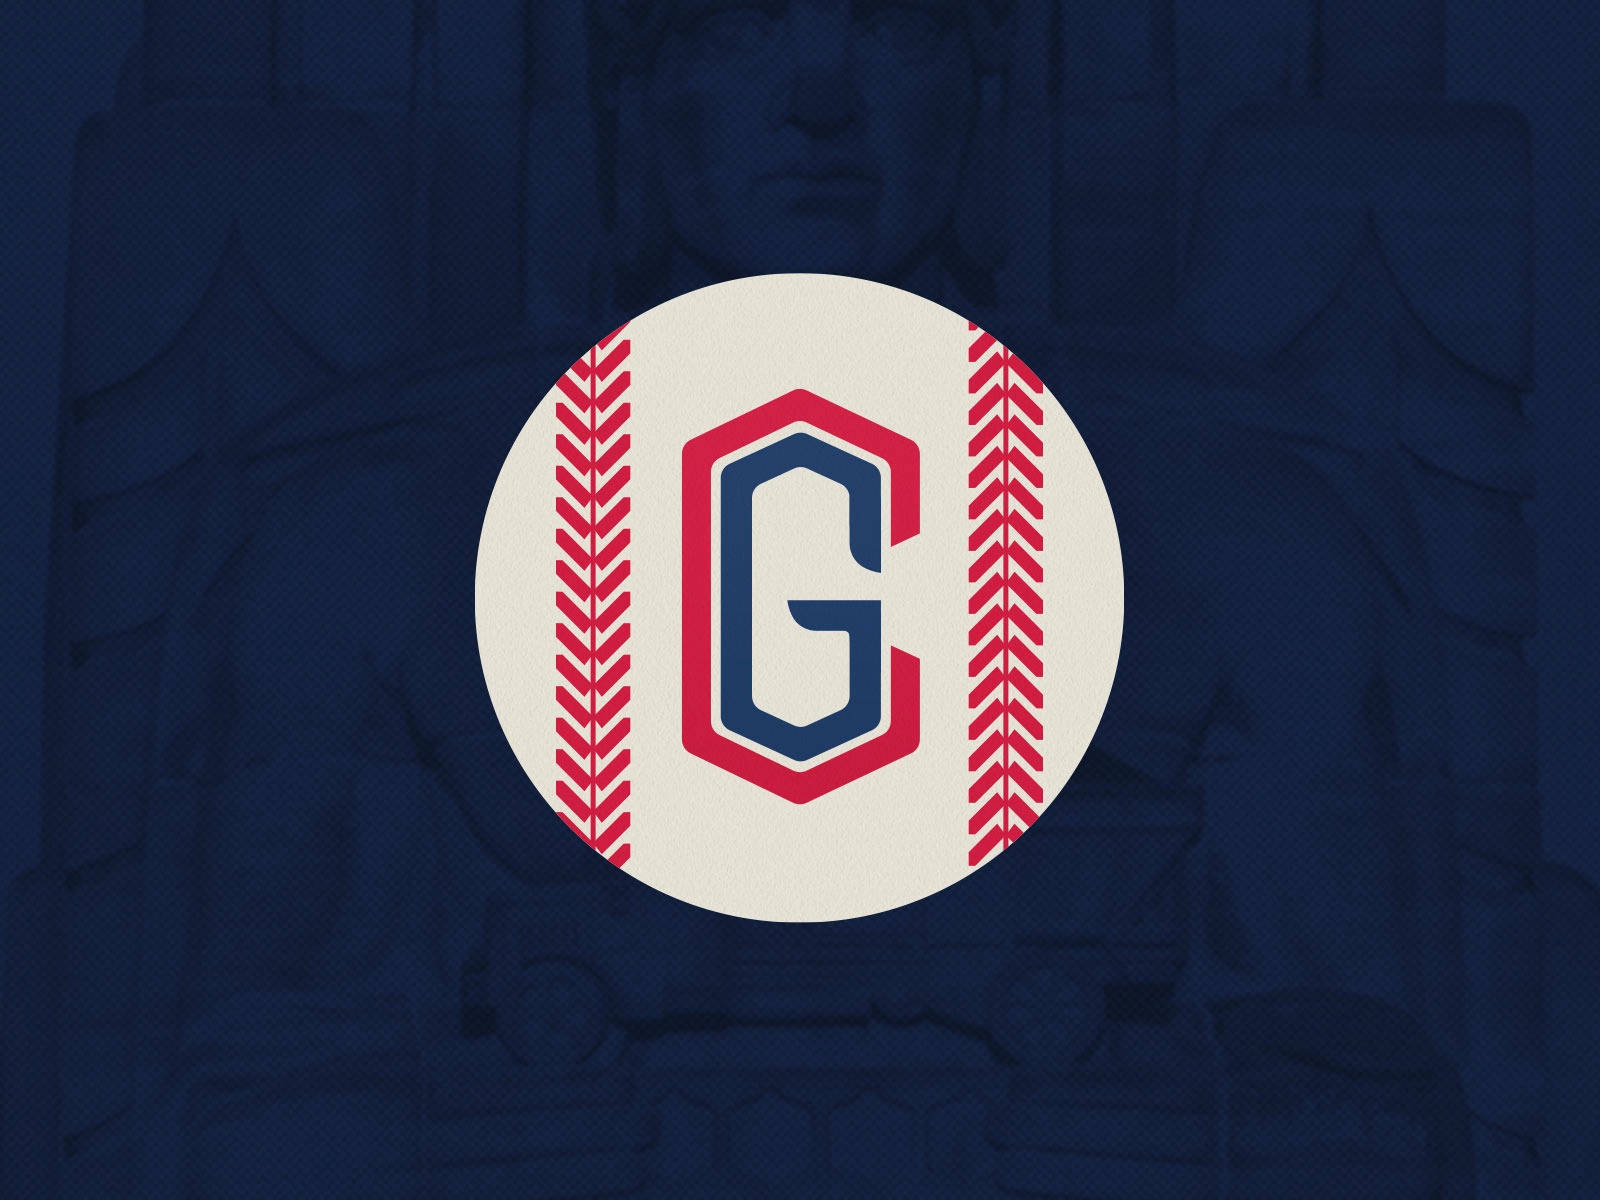 Cleveland Guardians Baseball Team Design Background